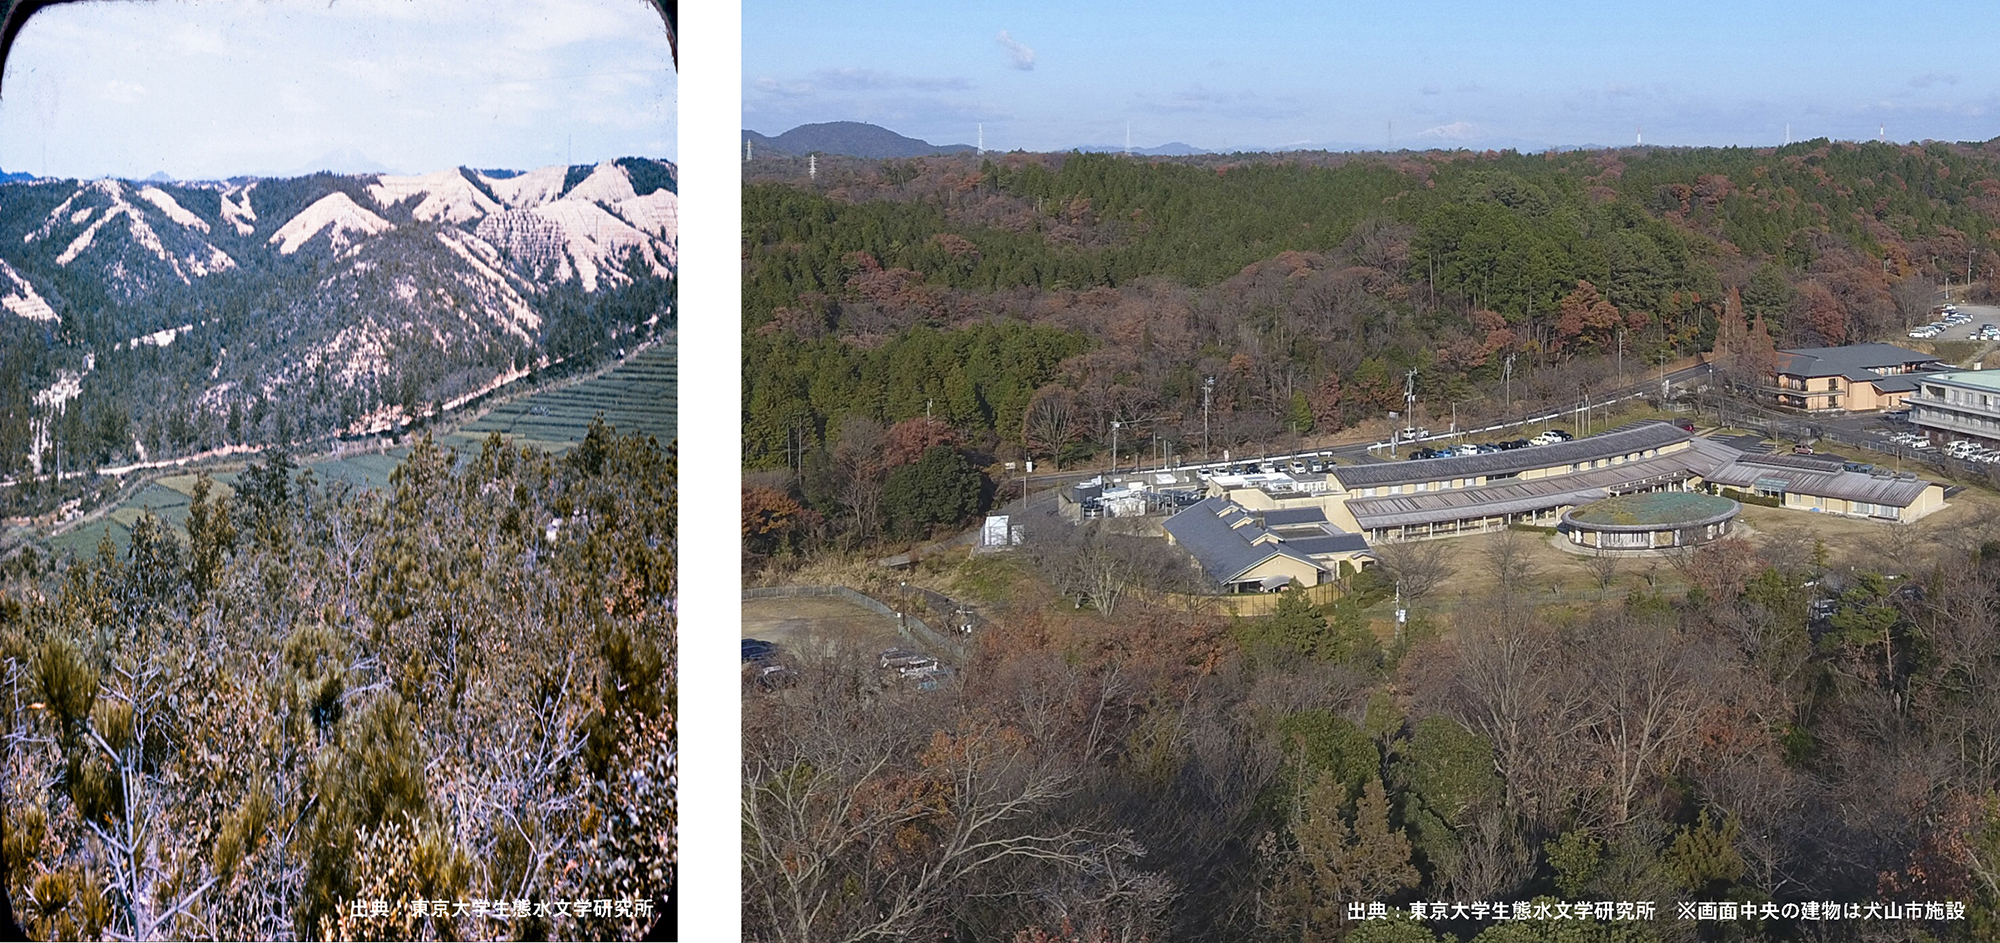 「サントリー 天然水の森 東京大学犬山研究林プロジェクト」の森林整備に関する協定締結